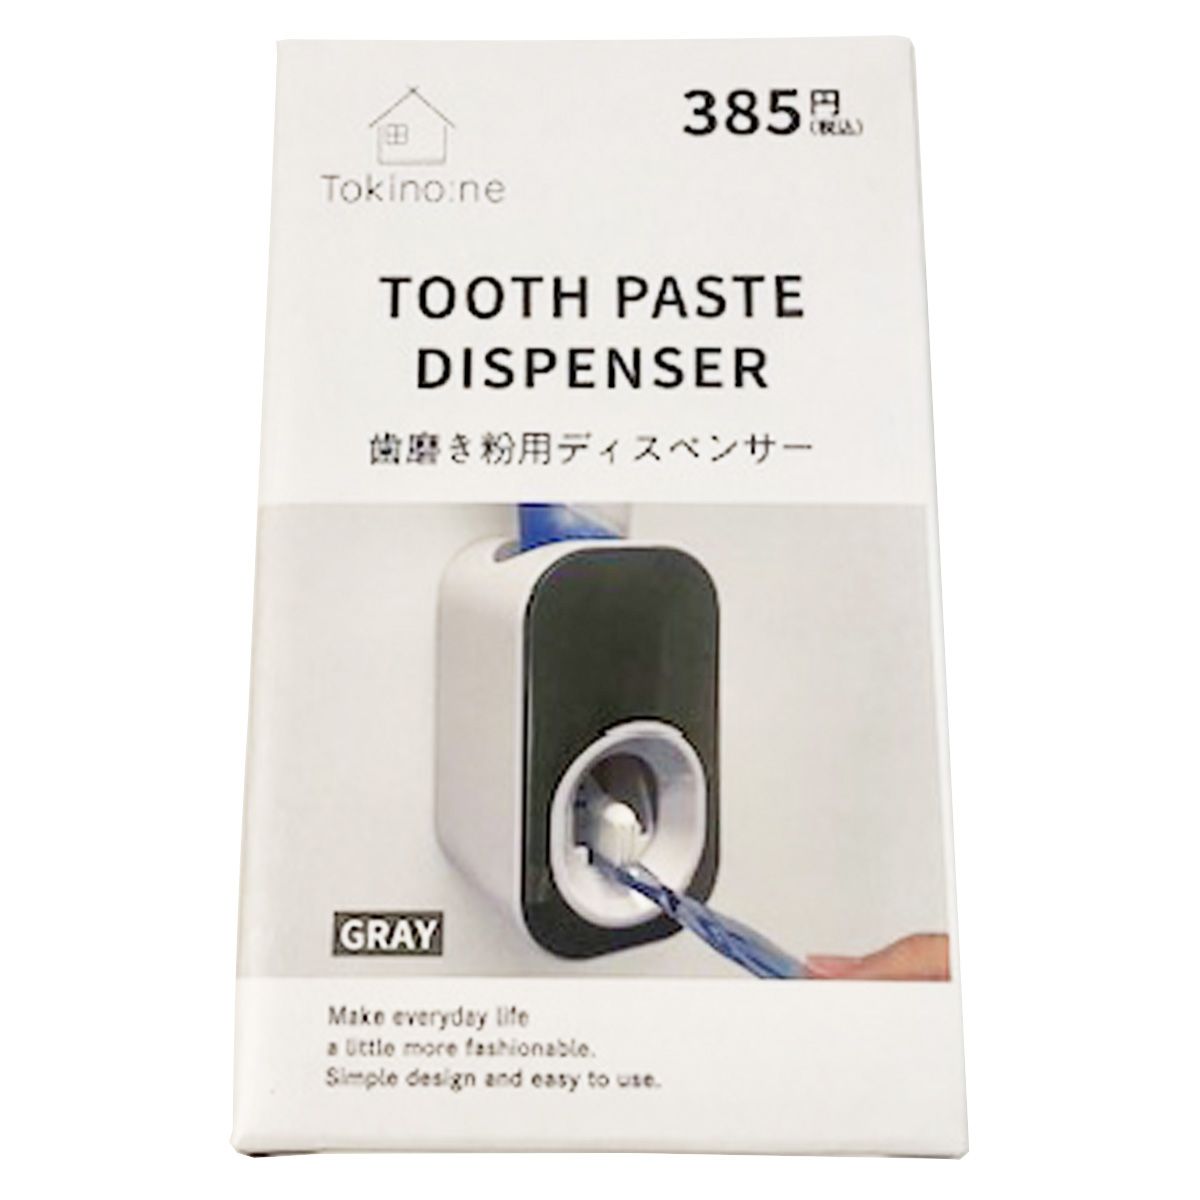 歯磨きチューブホルダー Tokinone PB.歯磨き粉用ディスペンサー グレー 059354